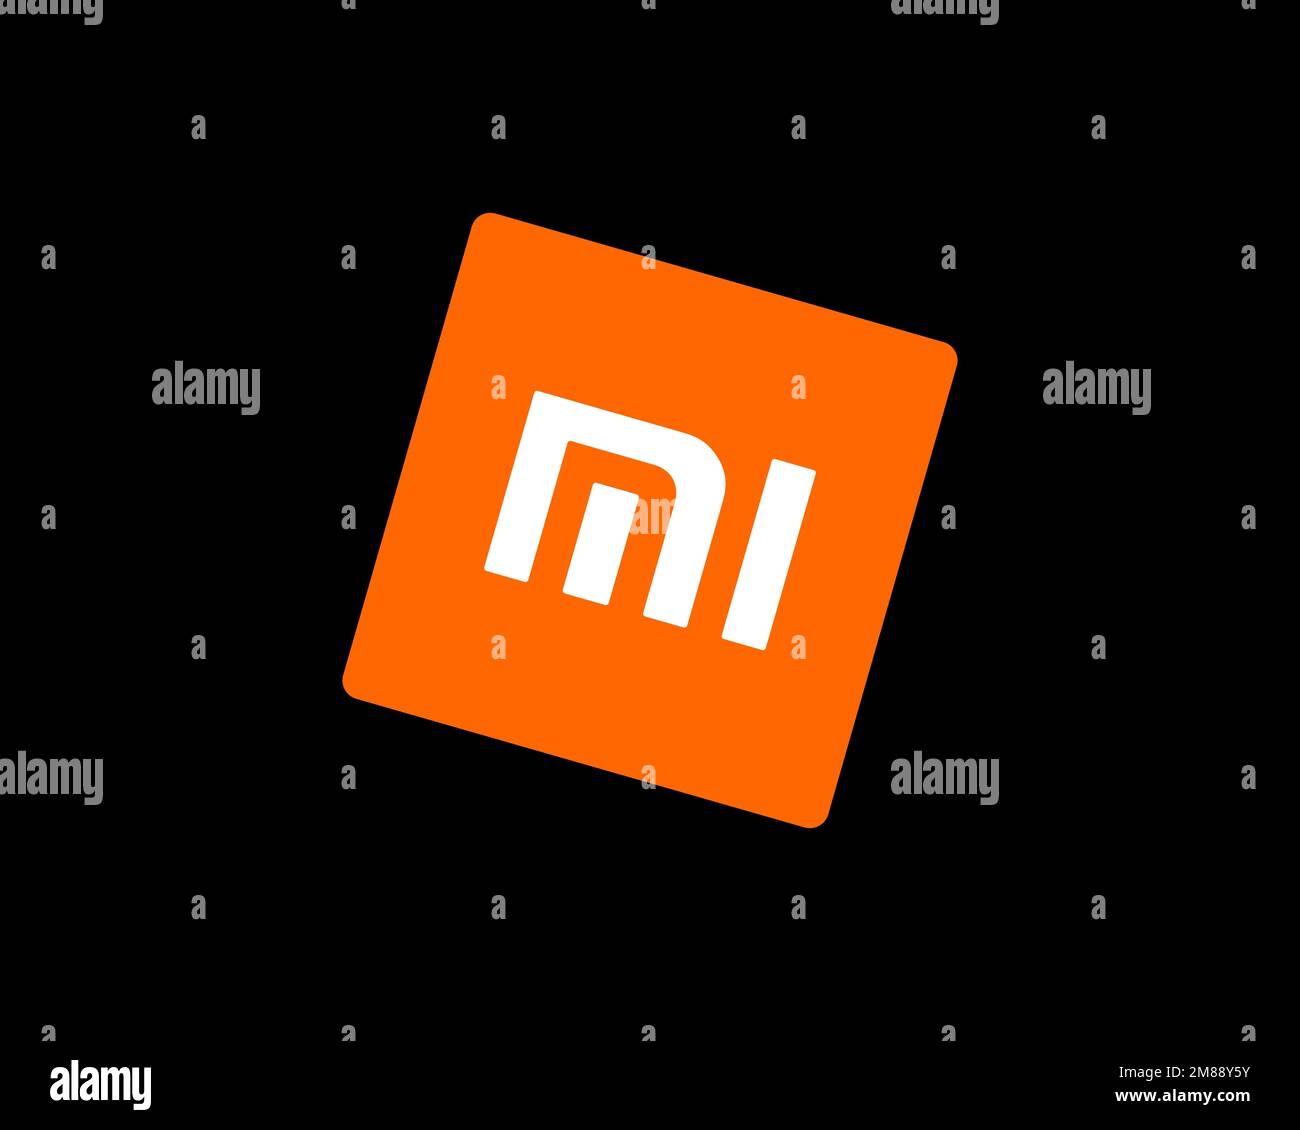 Xiaomi Mi 1 là một sản phẩm đầu tiên của Xiaomi và là một trong những chiếc điện thoại được yêu thích nhất. Với thiết kế mượt mà và chất lượng cao, Xiaomi Mi 1 là lựa chọn hoàn hảo dành cho những ai yêu thích công nghệ. Hãy cùng ngắm nhìn những hình ảnh đẹp về Xiaomi Mi 1 qua ảnh sản phẩm.